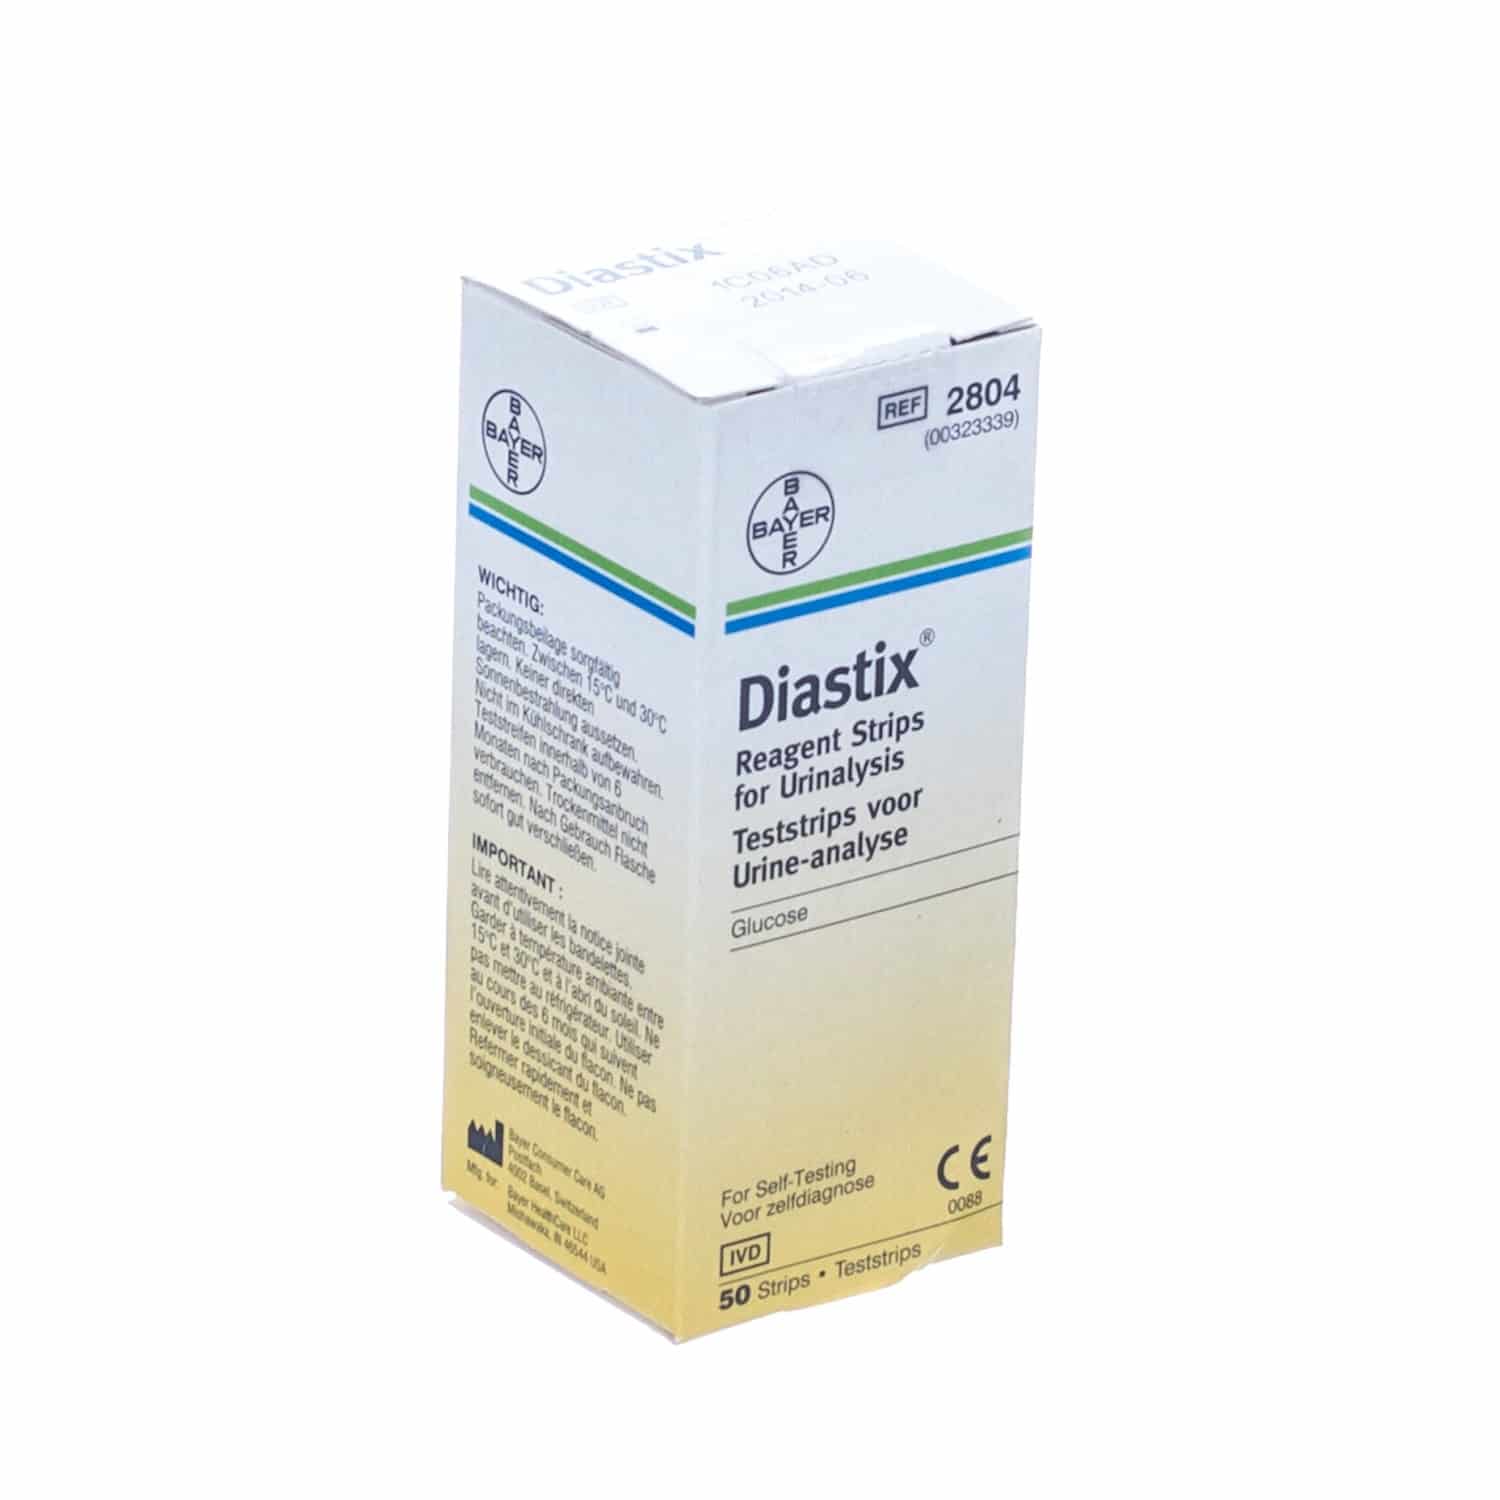 Diastix